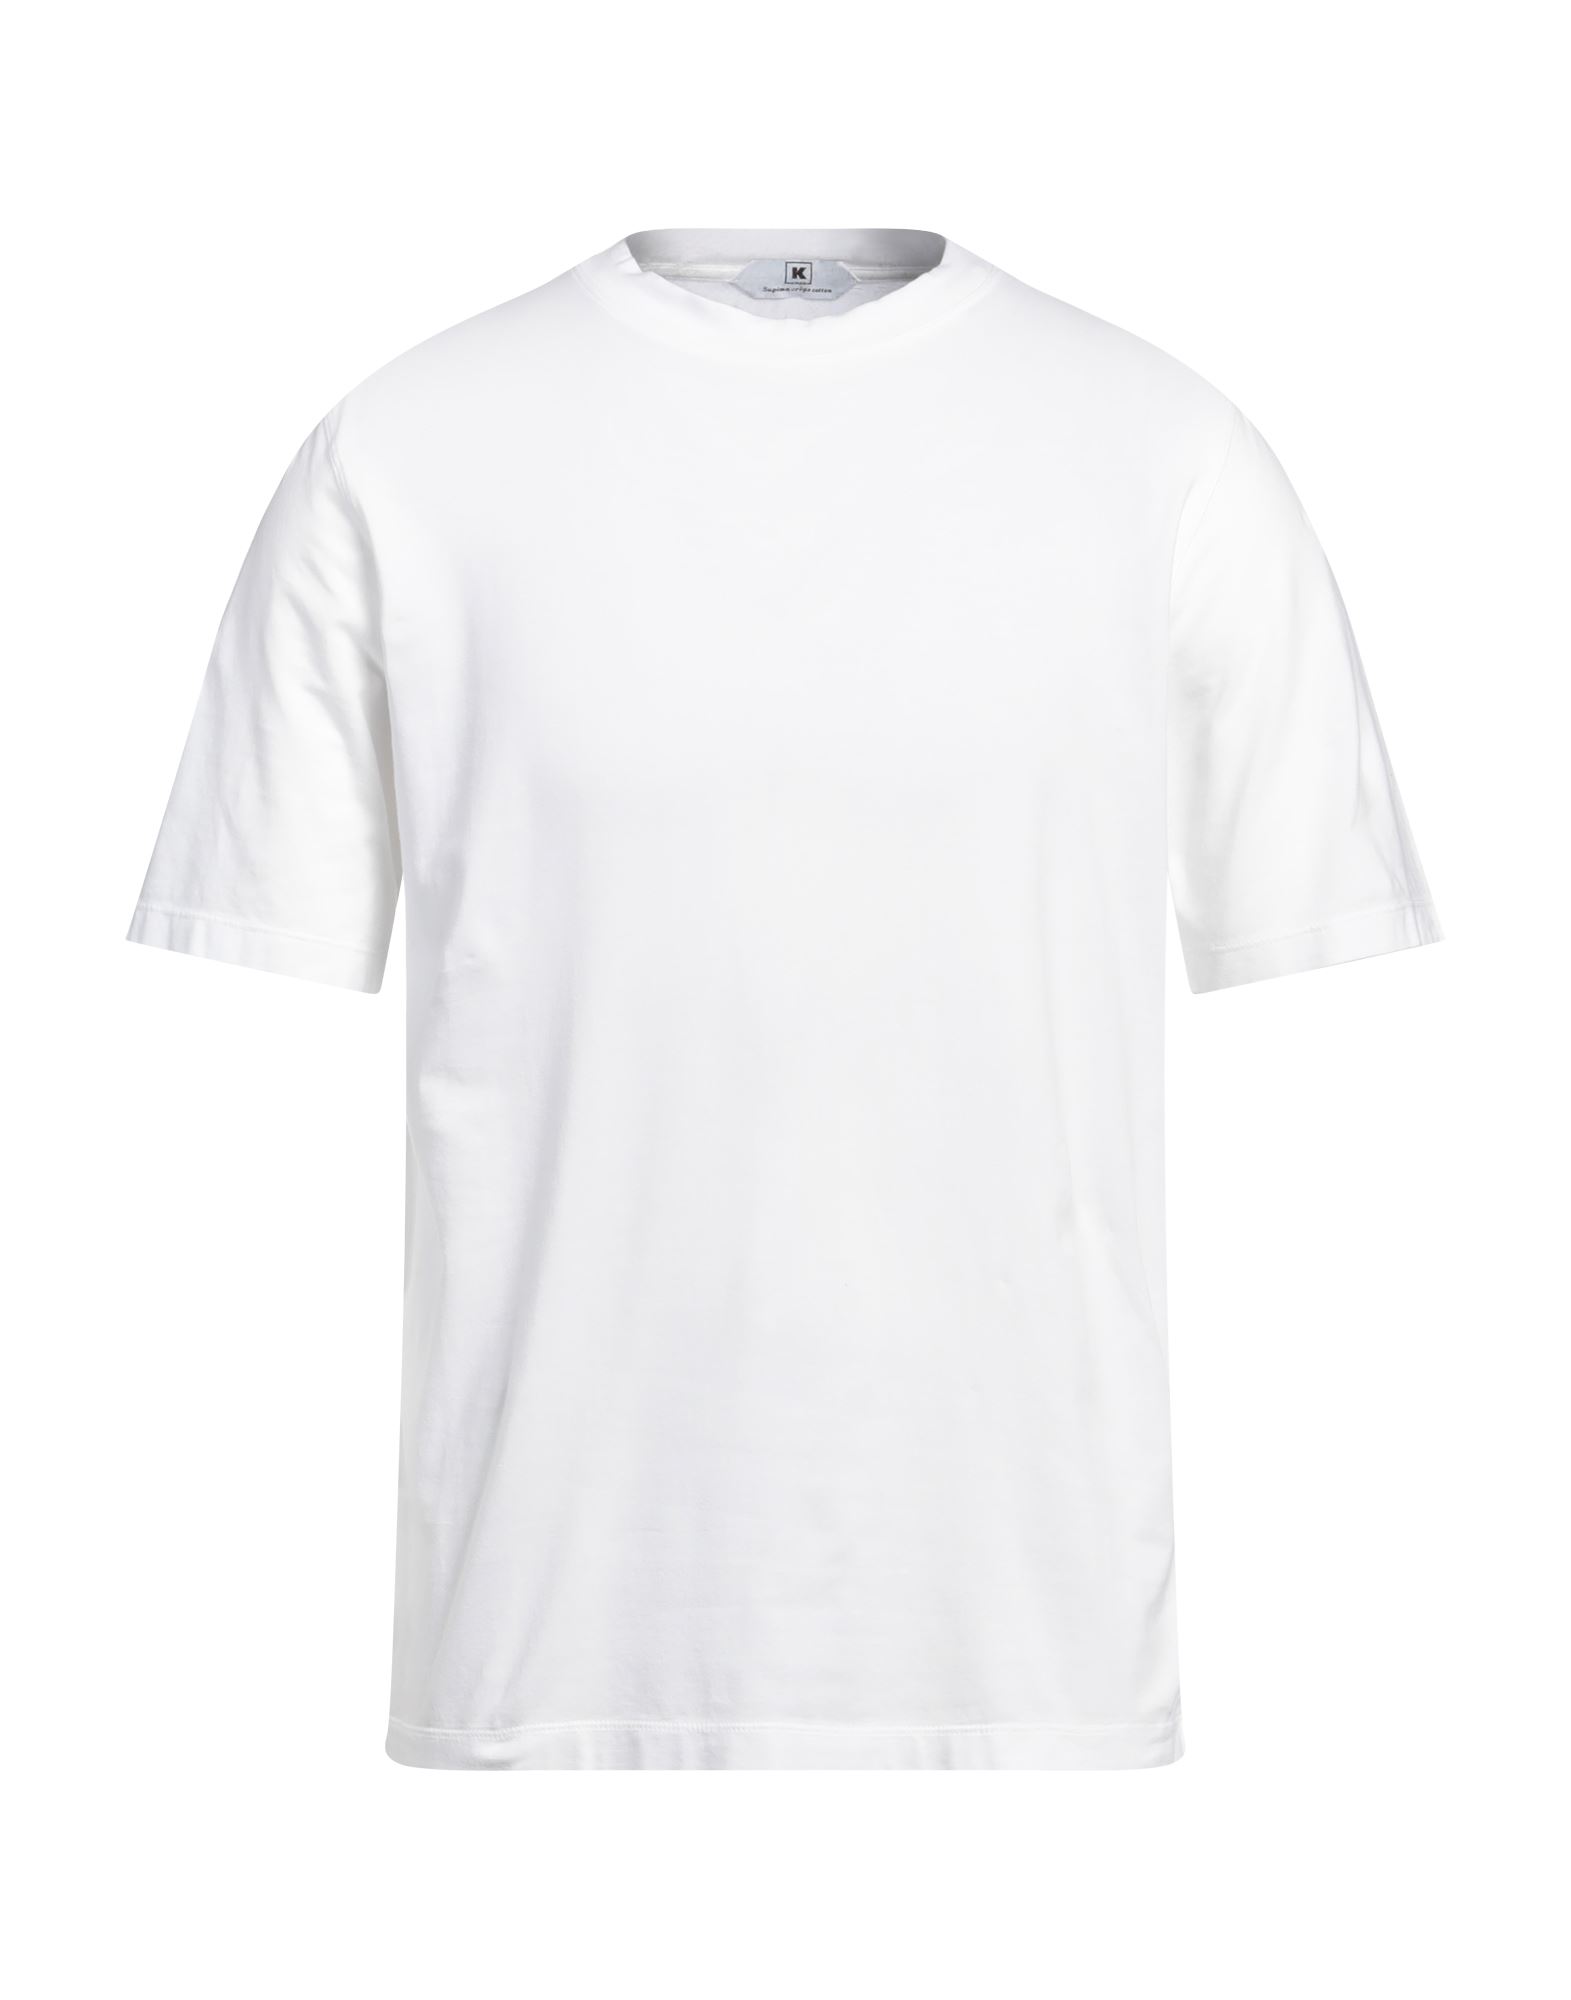 KIRED T-shirts Herren Weiß von KIRED